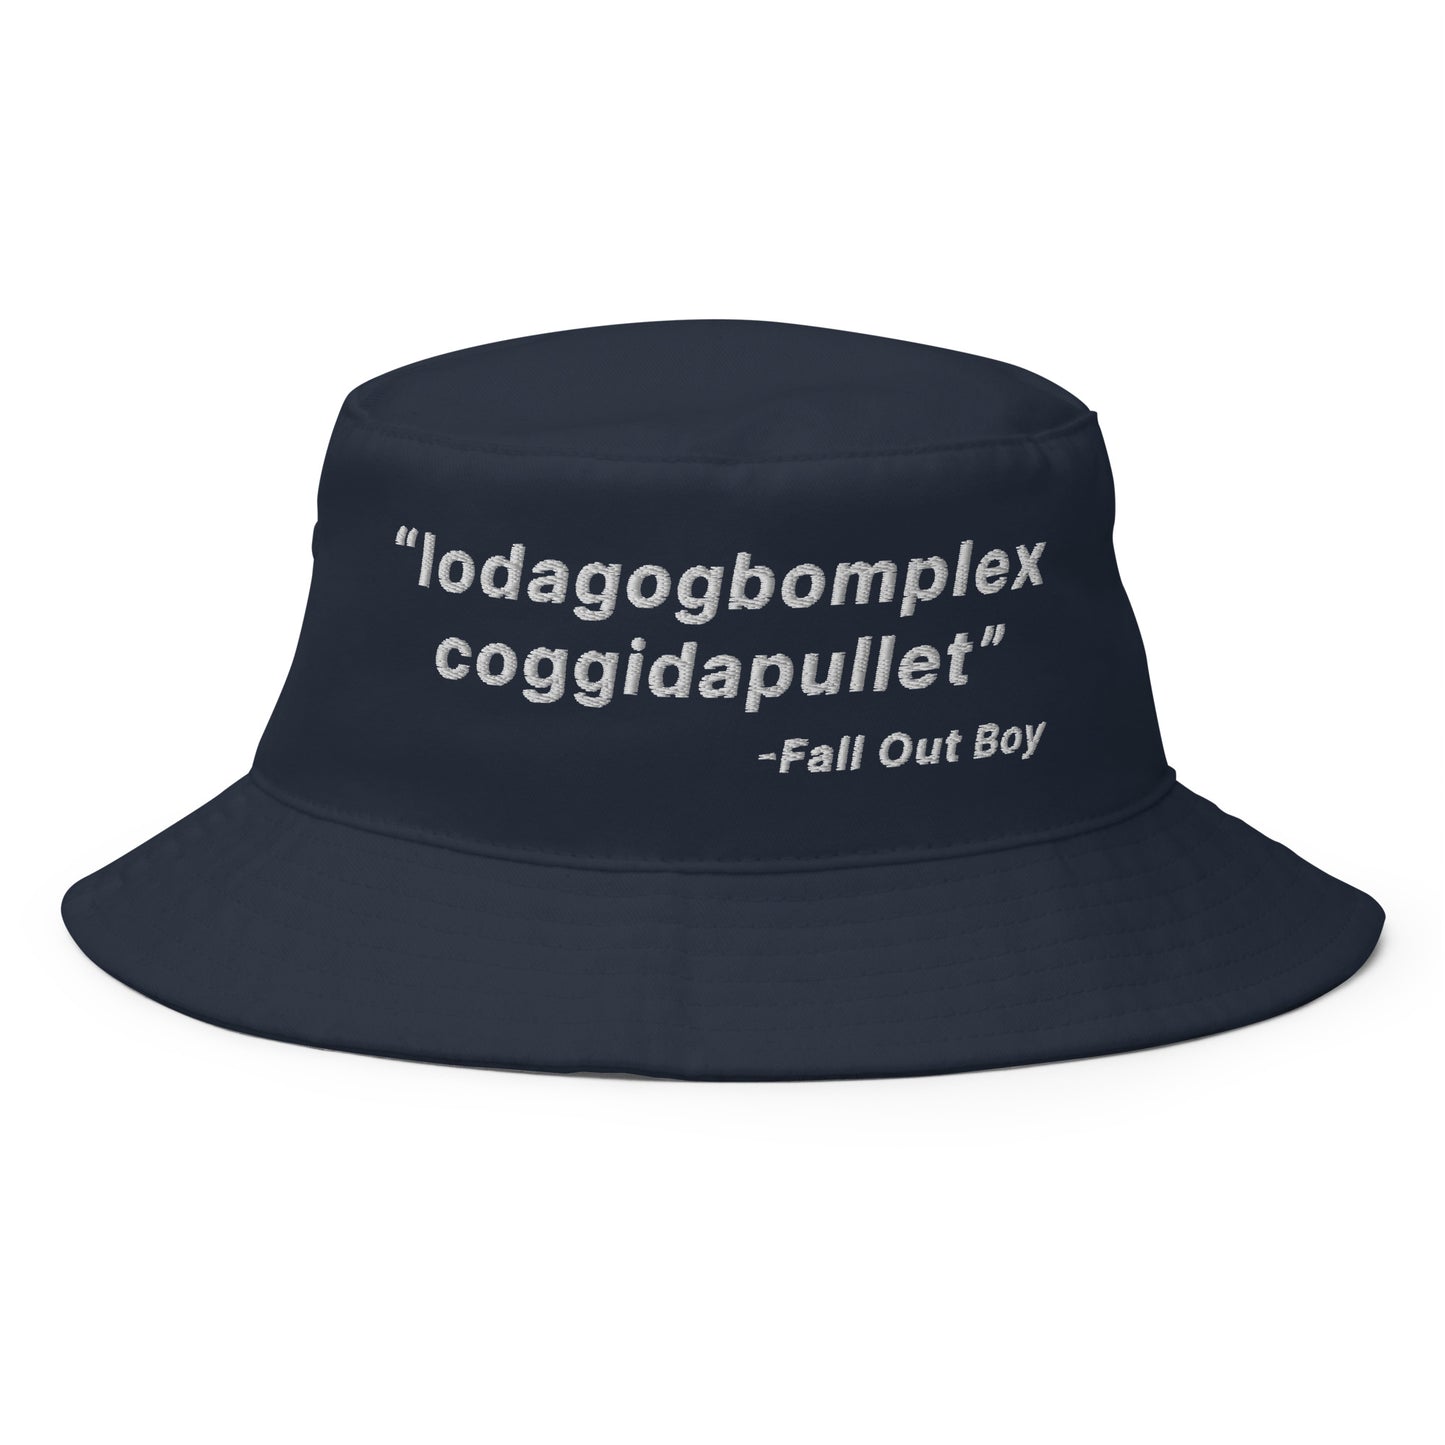 Lodagogbomplex Coggidapullet (Fall Out Boy) Bucket Hat